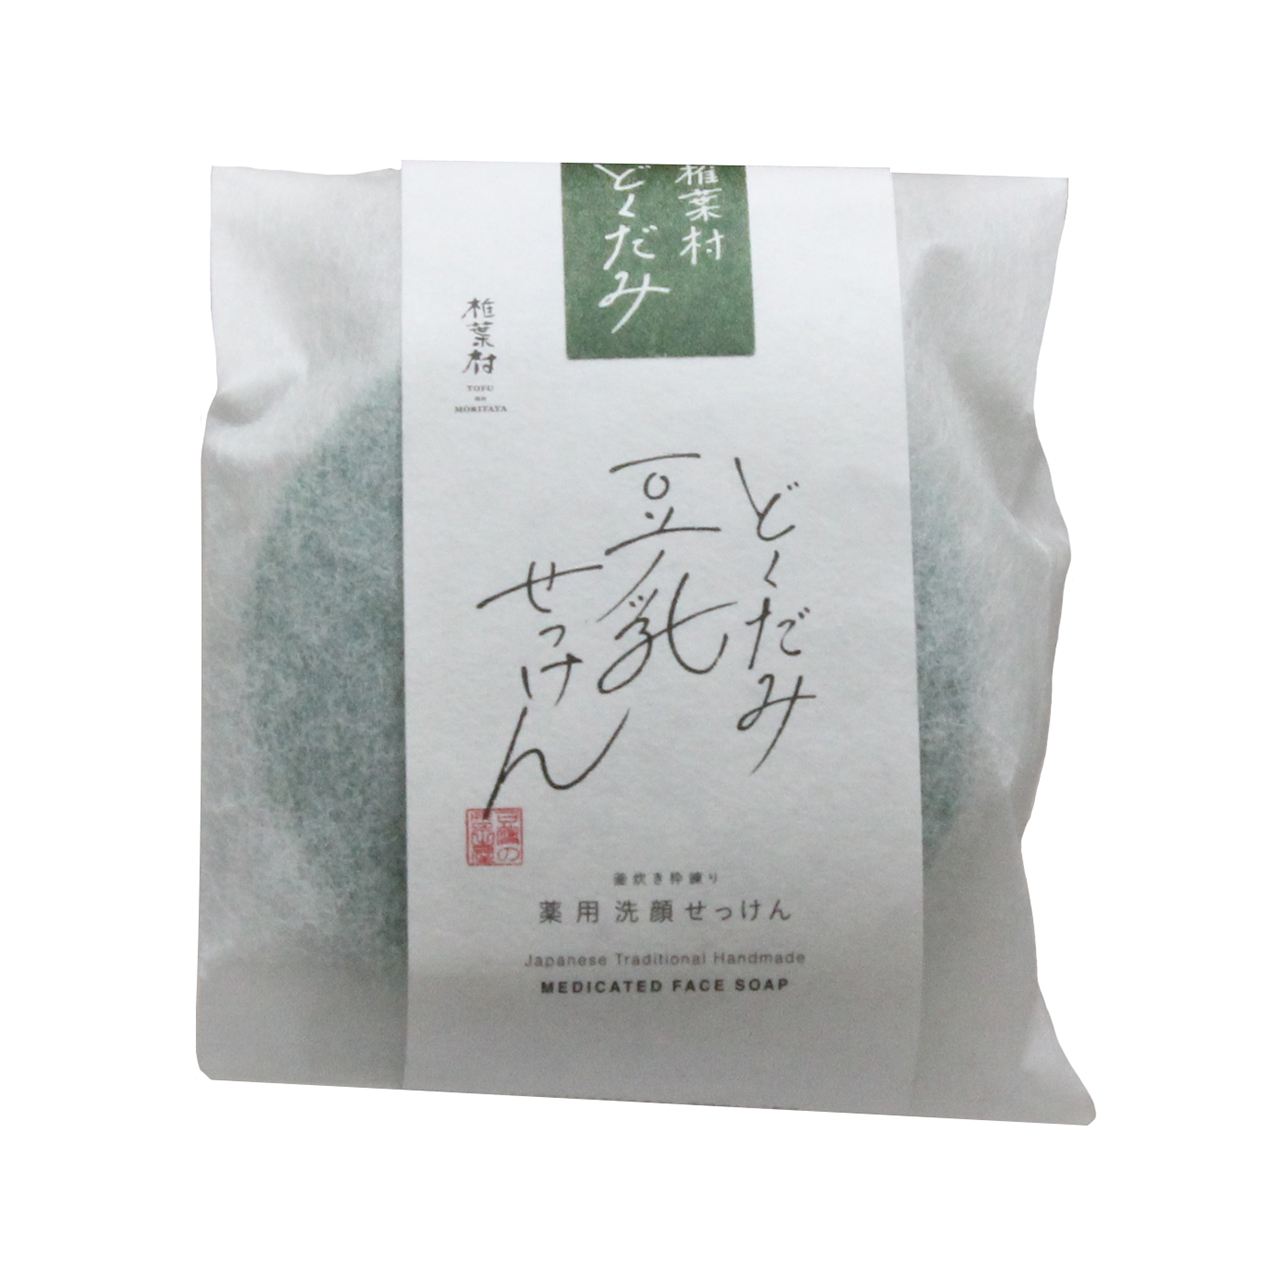 豆腐の盛田屋 薬用ドクダミ 豆乳石ケン 自然生活 100g